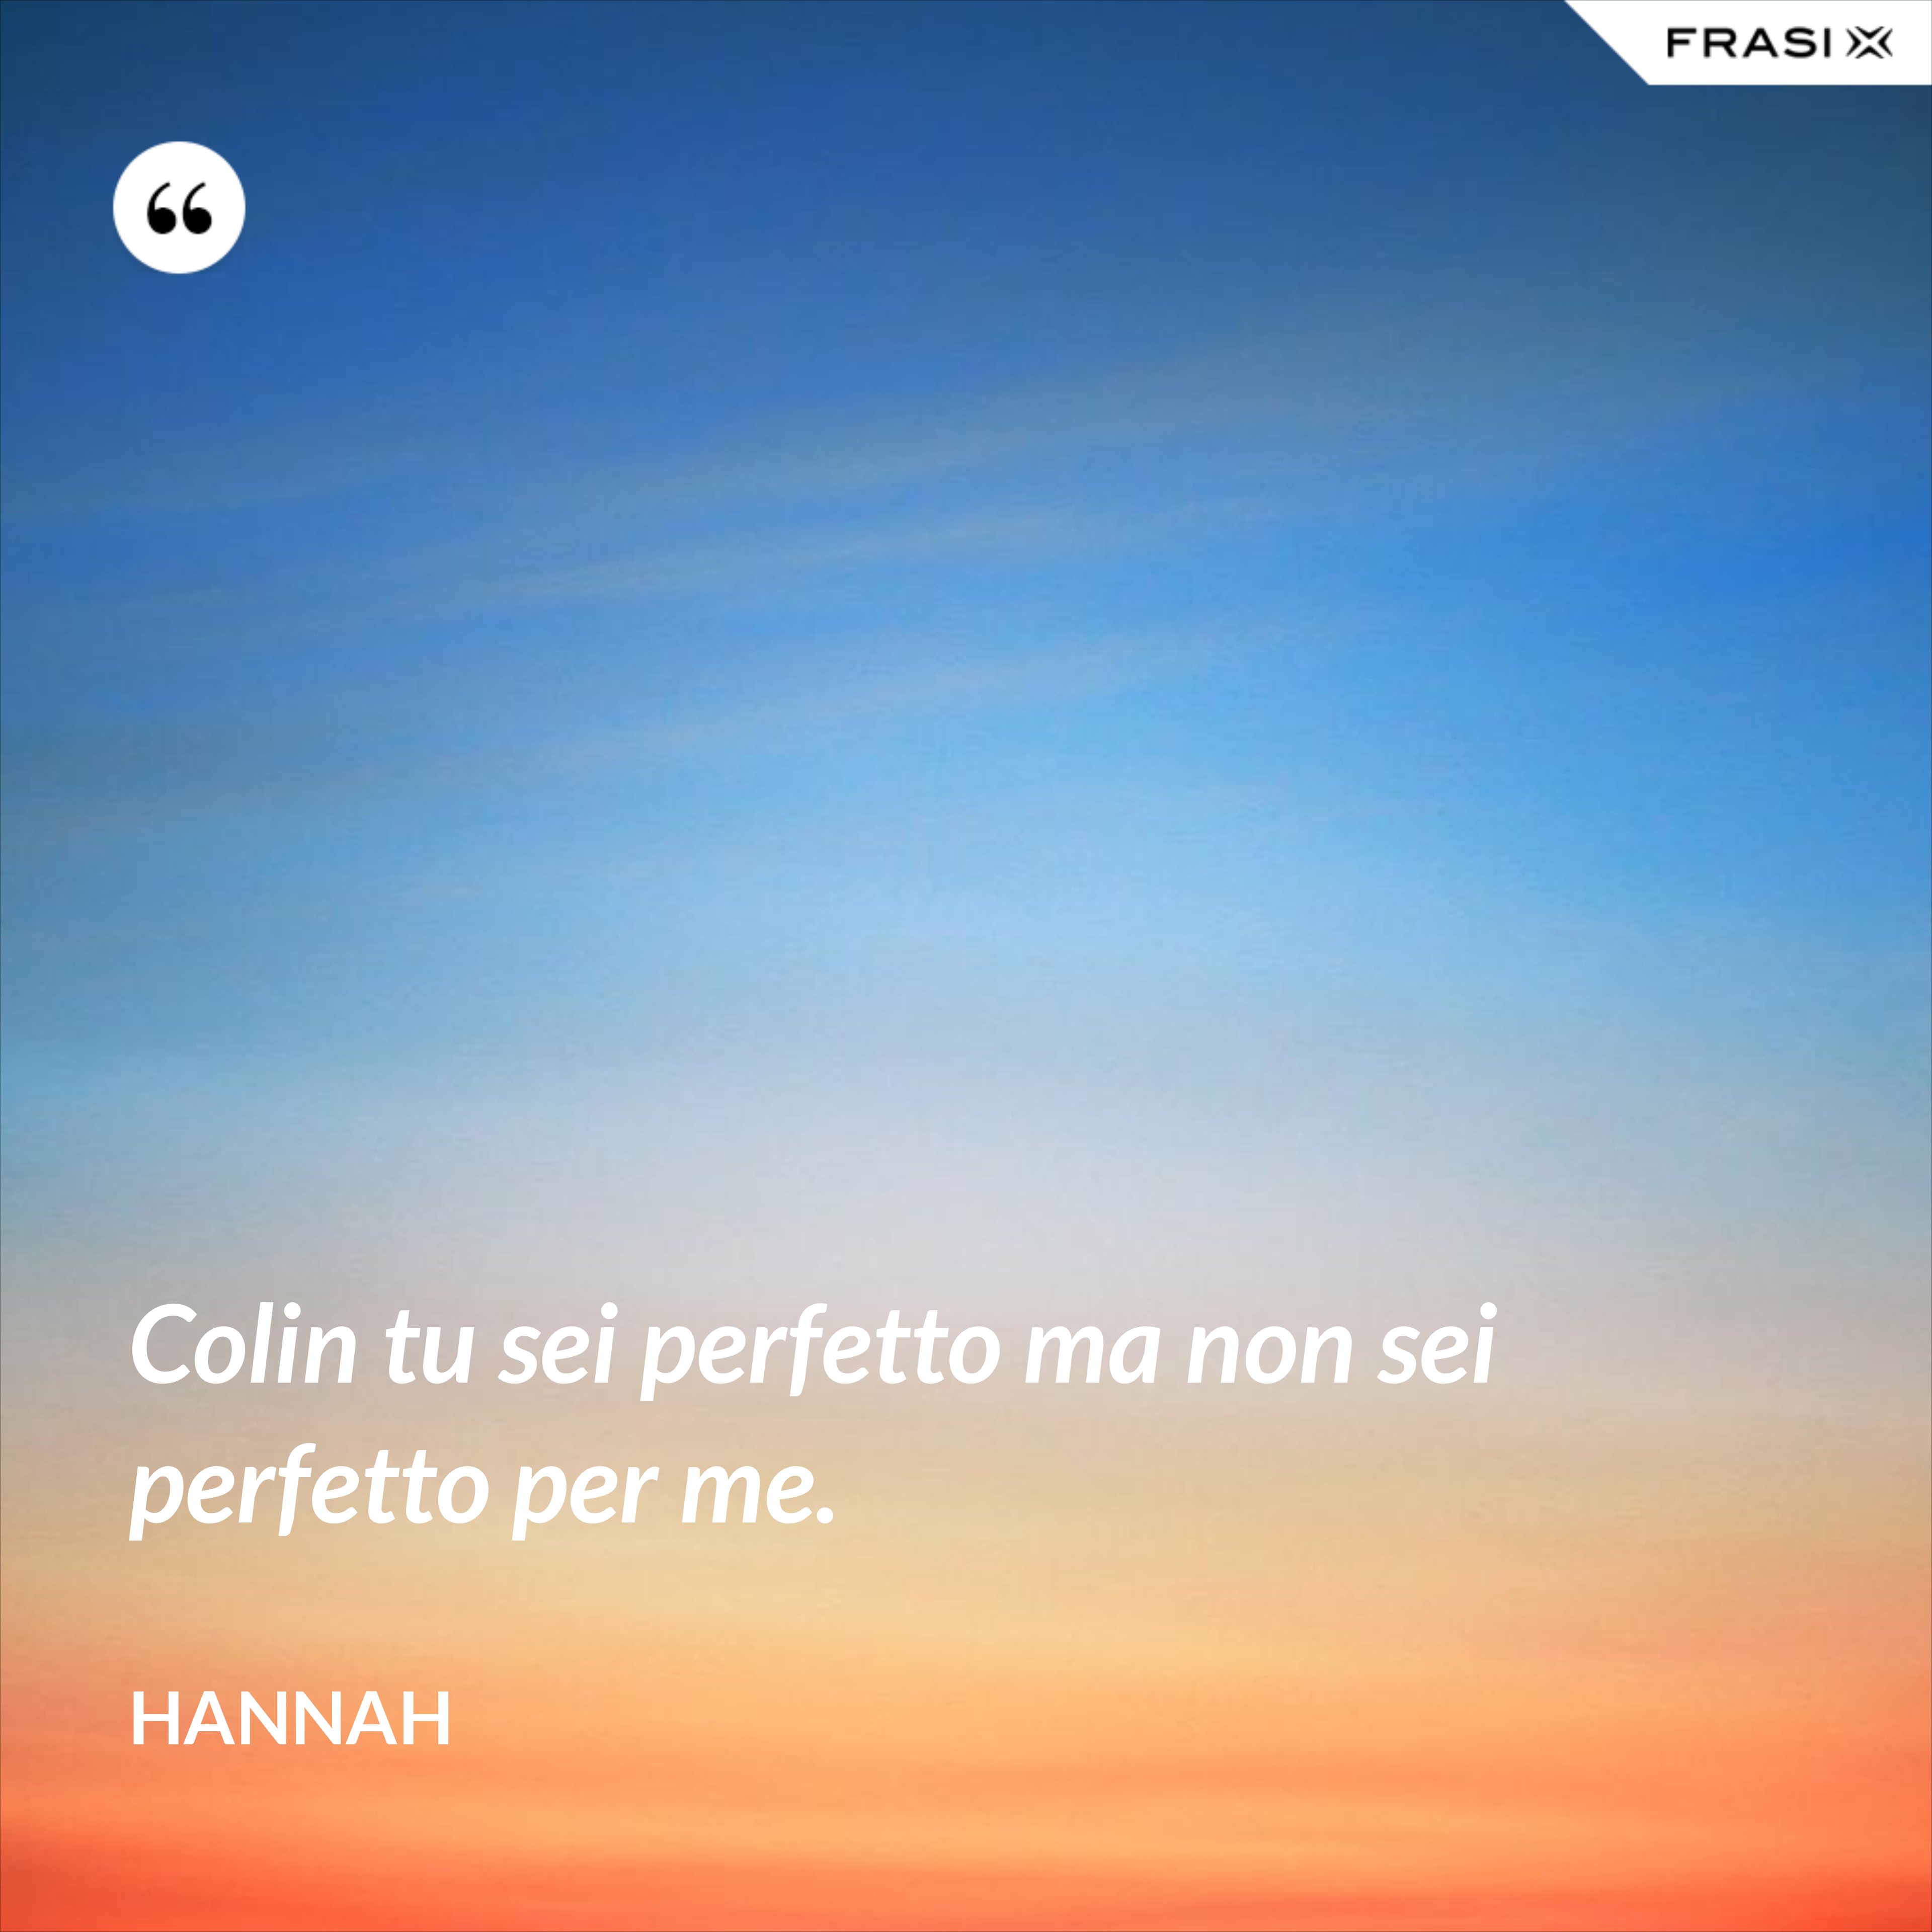 Colin tu sei perfetto ma non sei perfetto per me. - Hannah